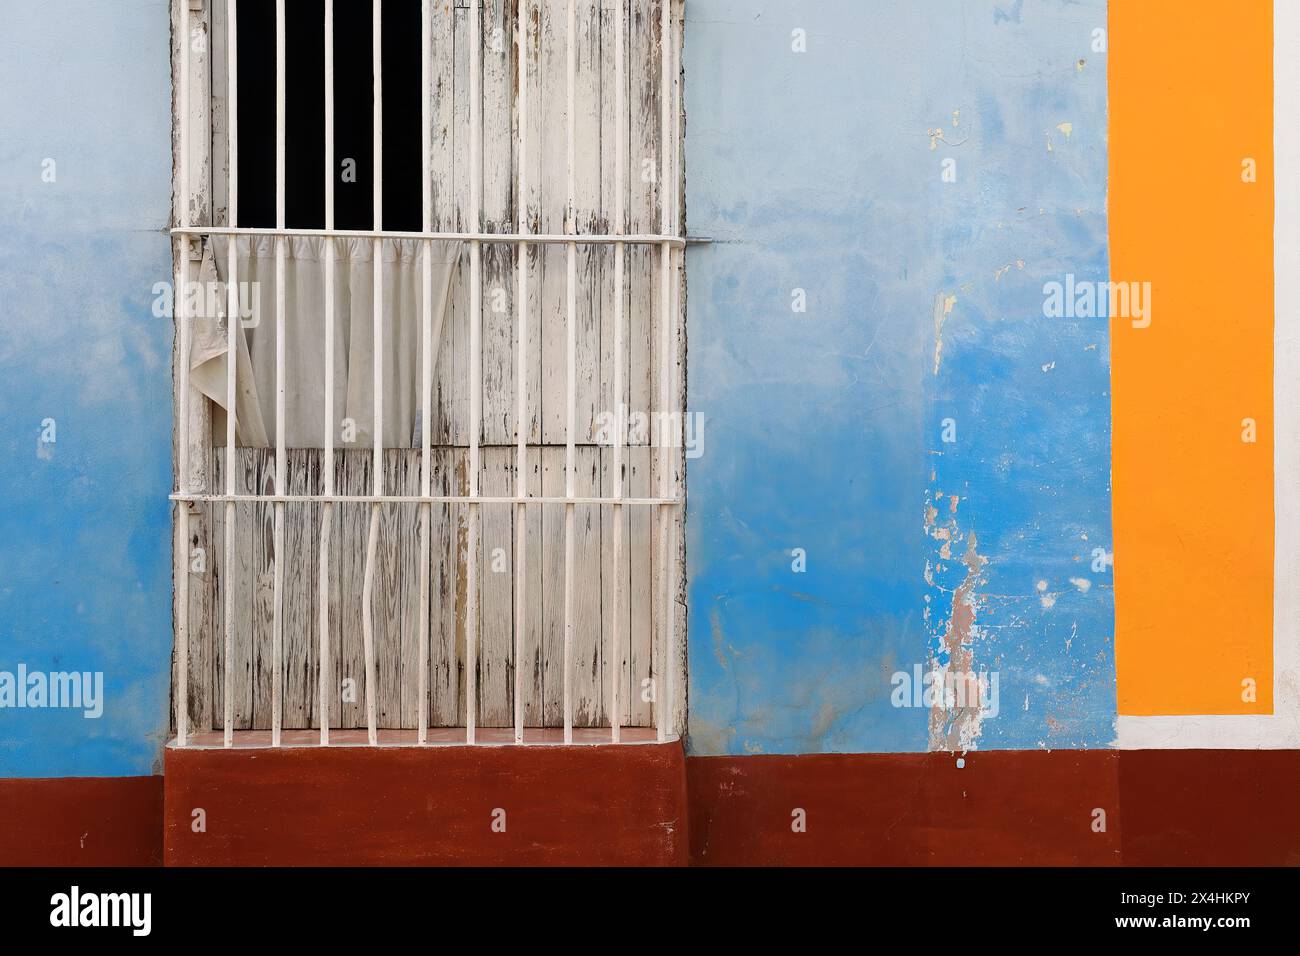 229 pareti colorate di casa coloniale che mostrano la solita finestra a griglia con persiane in legno e porte lunghe su una facciata blu-marrone-arancio-bianco. Trinidad-Cuba. Foto Stock